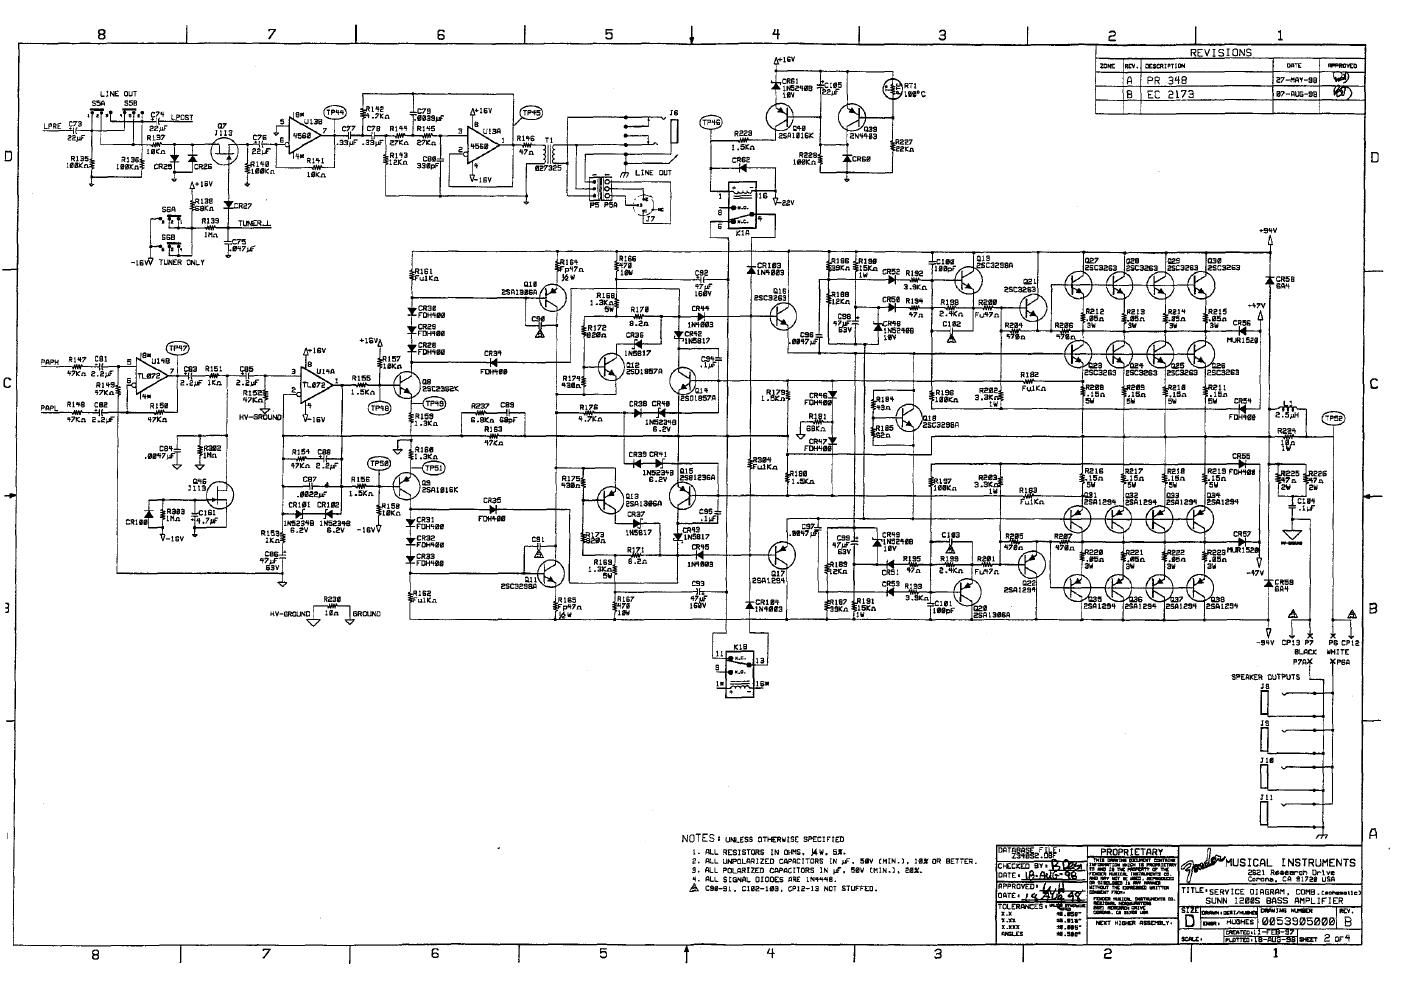 sunn 1200s schematic